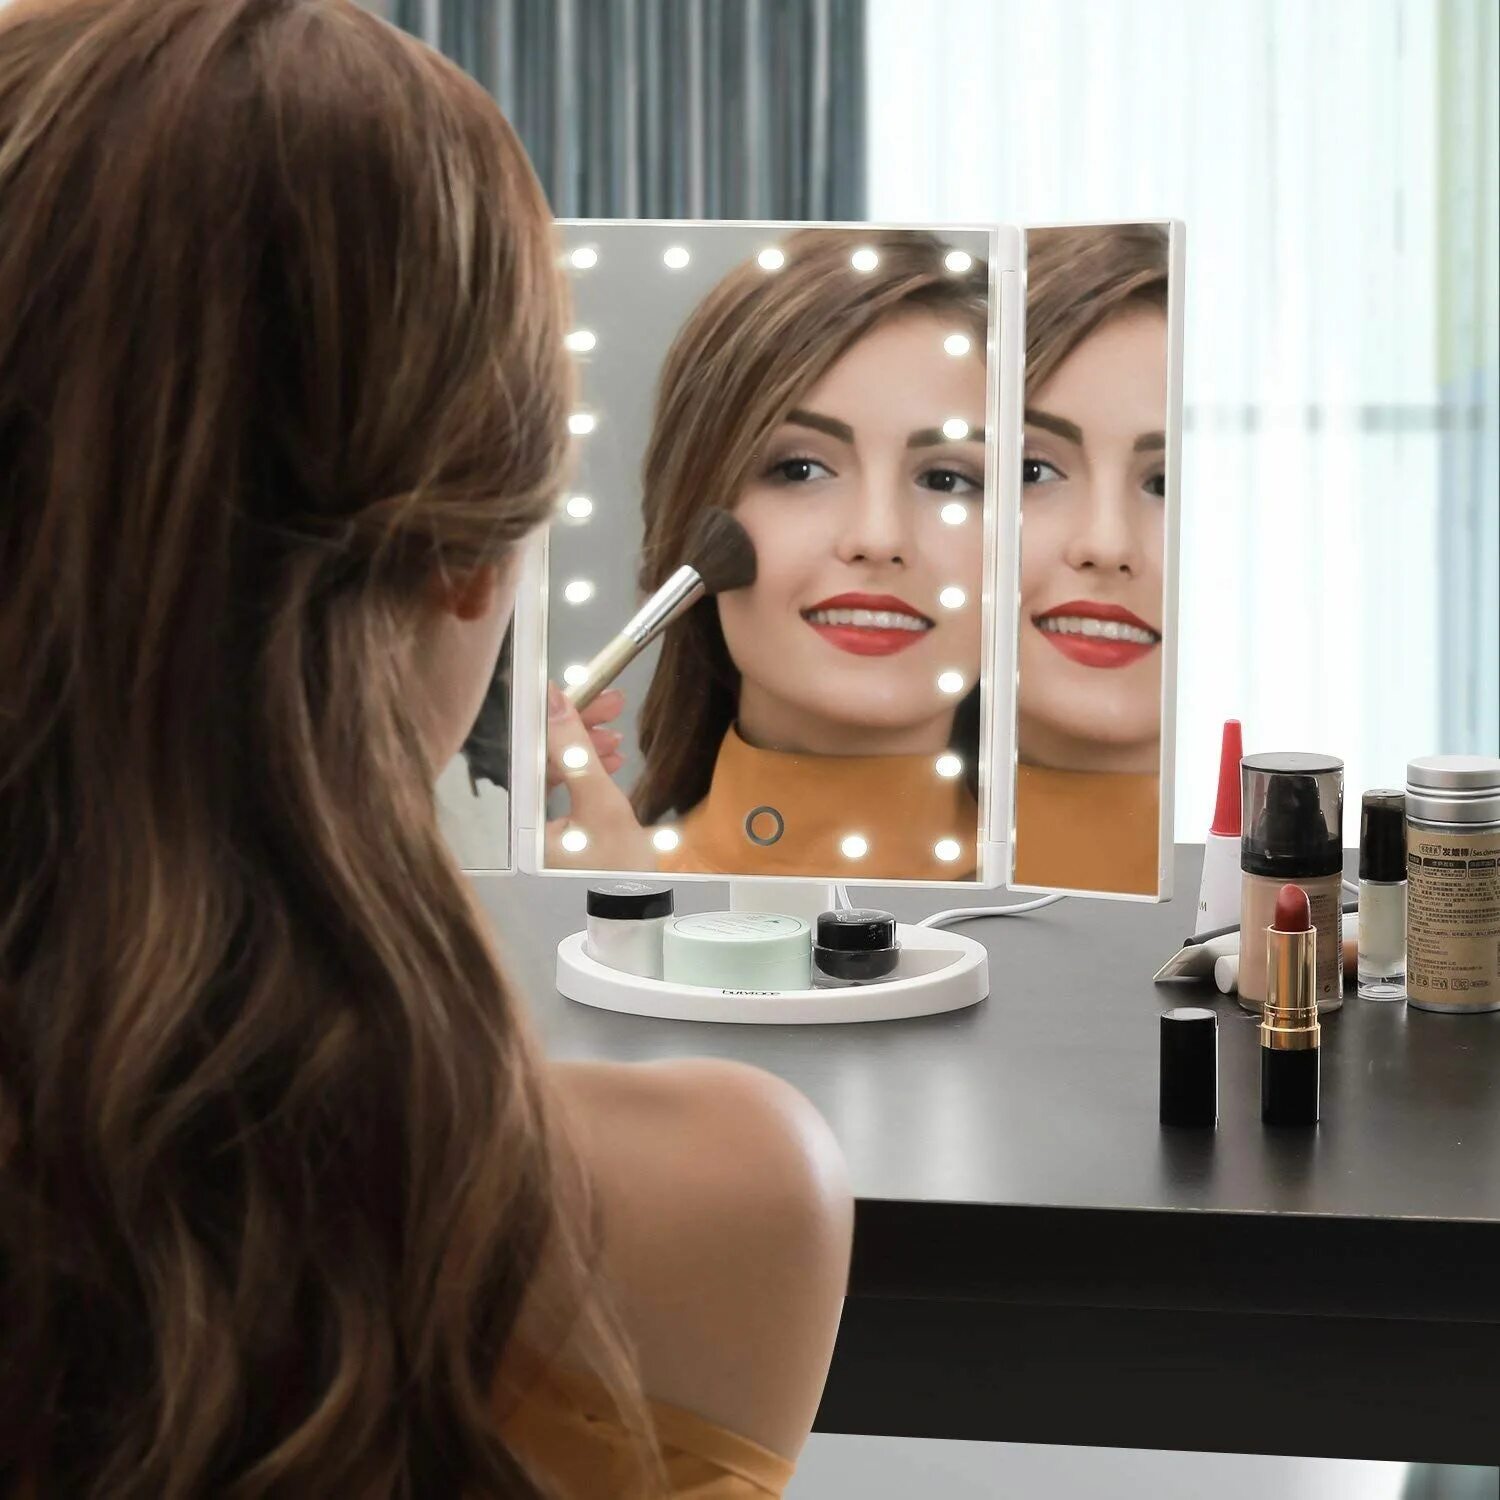 Вин ап зеркало. Фотосессия с зеркалом и косметикой. Бьюти зеркало. Beauty Cosmetic зеркало. Тач макияж.